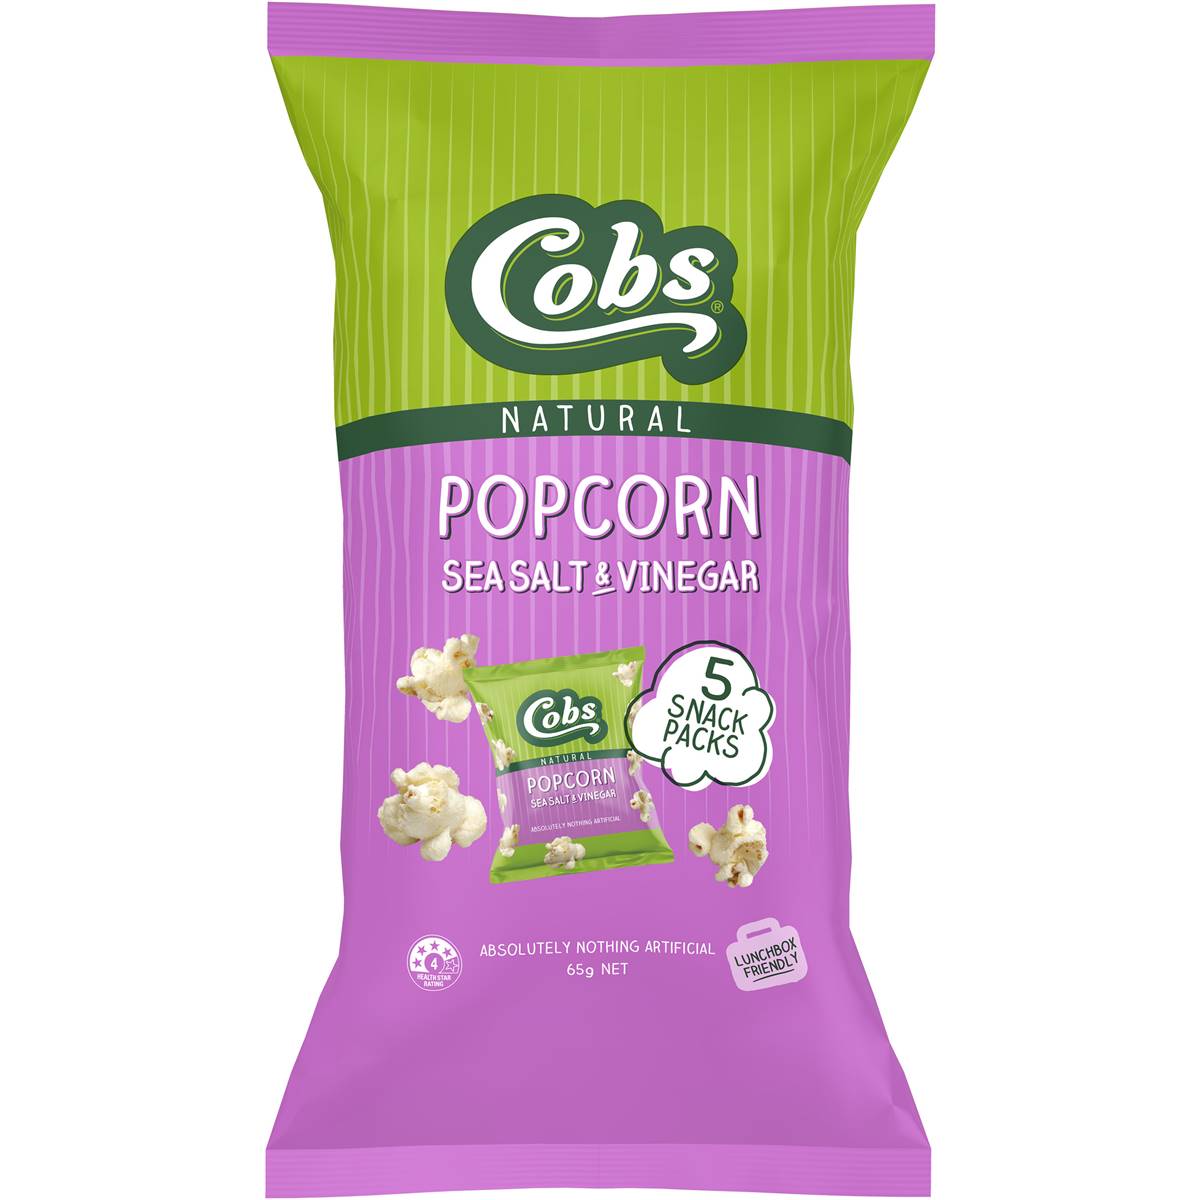 Calories in Cobs Popcorn Sea Salt & Vinegar Snack Packs